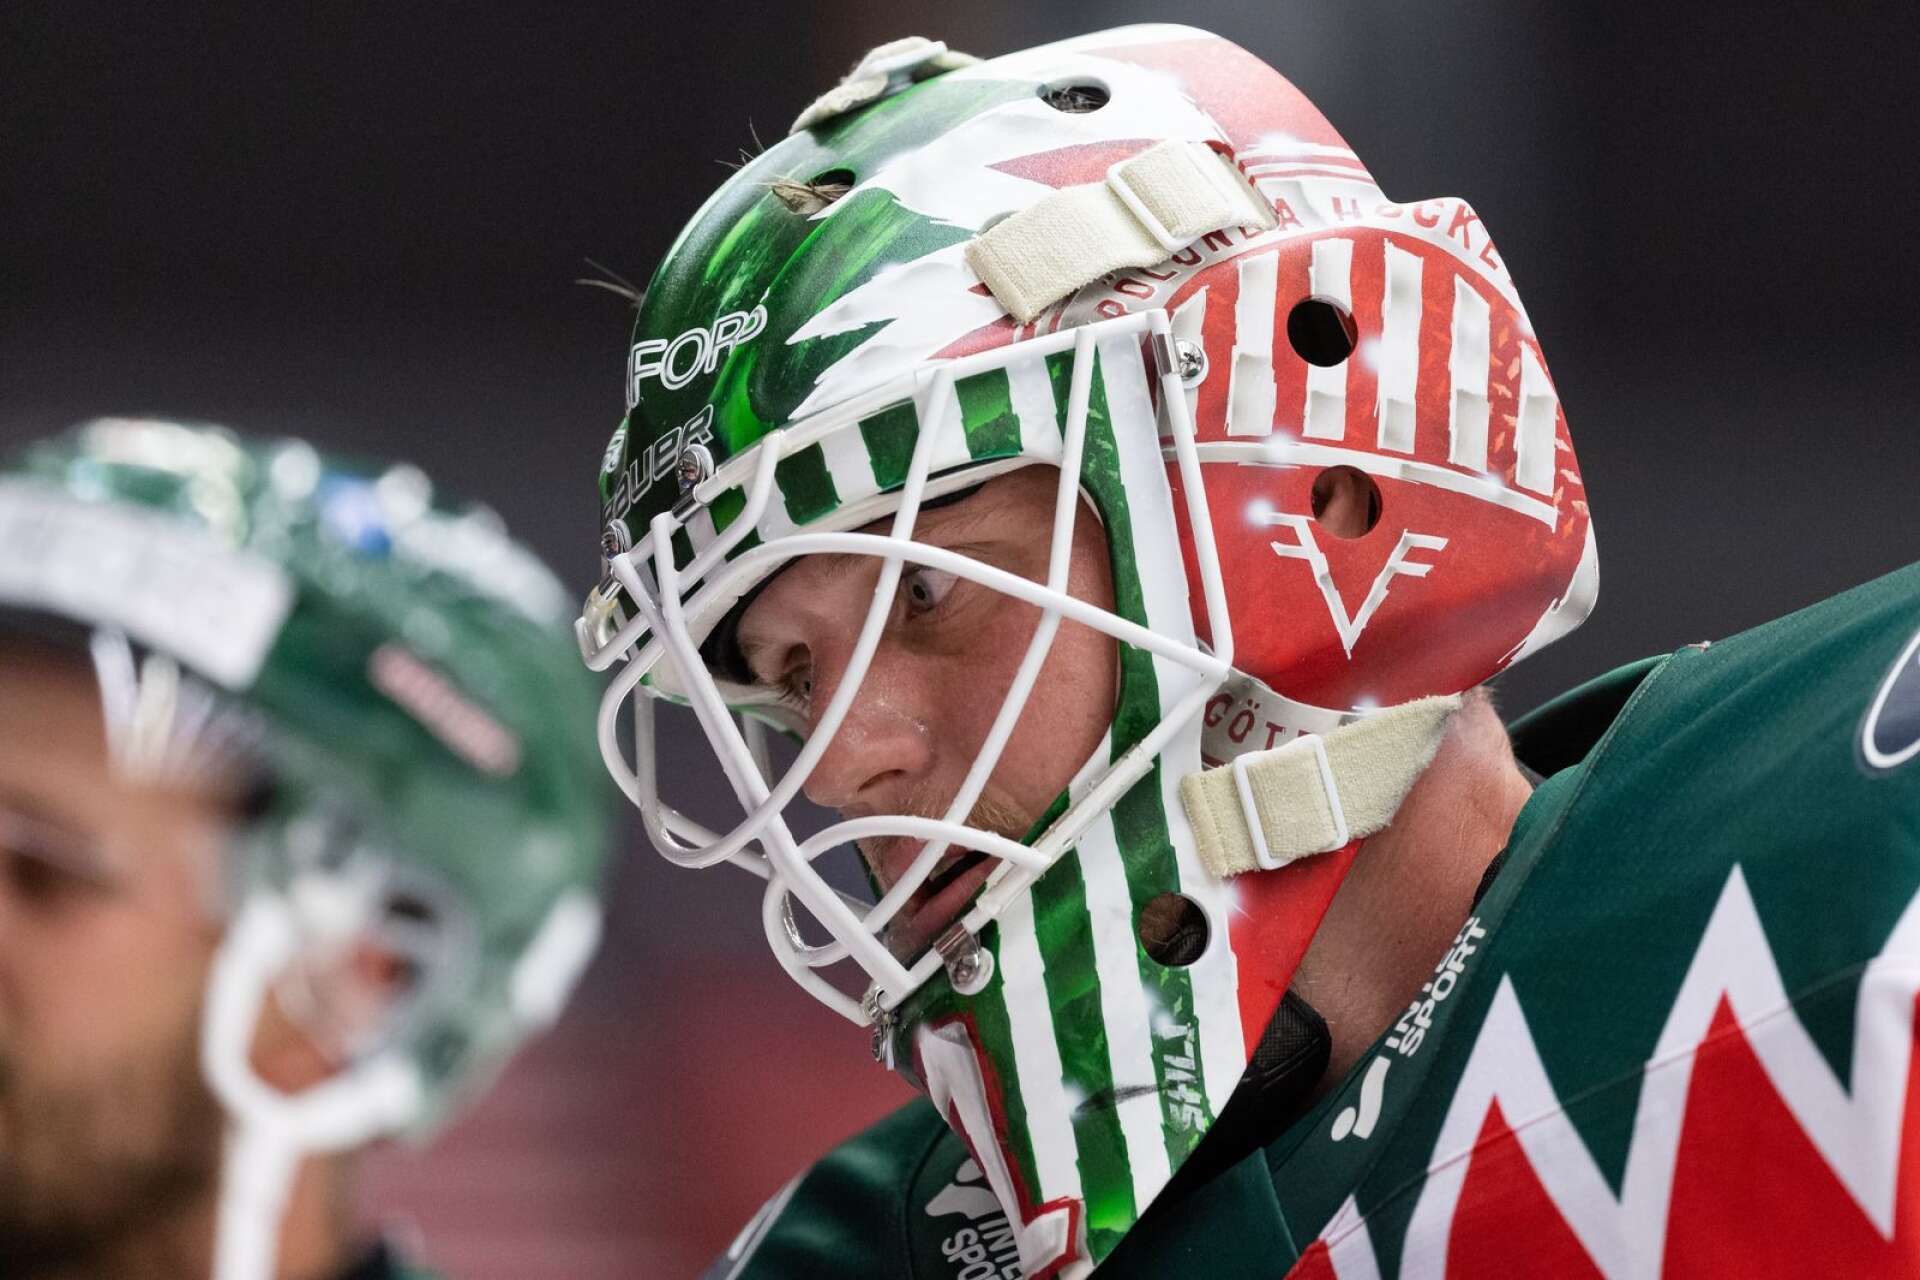 Lars Johansson är tillbaka i Frölunda efter en handfull säsonger utomlands. Kommer närmast från KHL där han radat upp fina siffror.